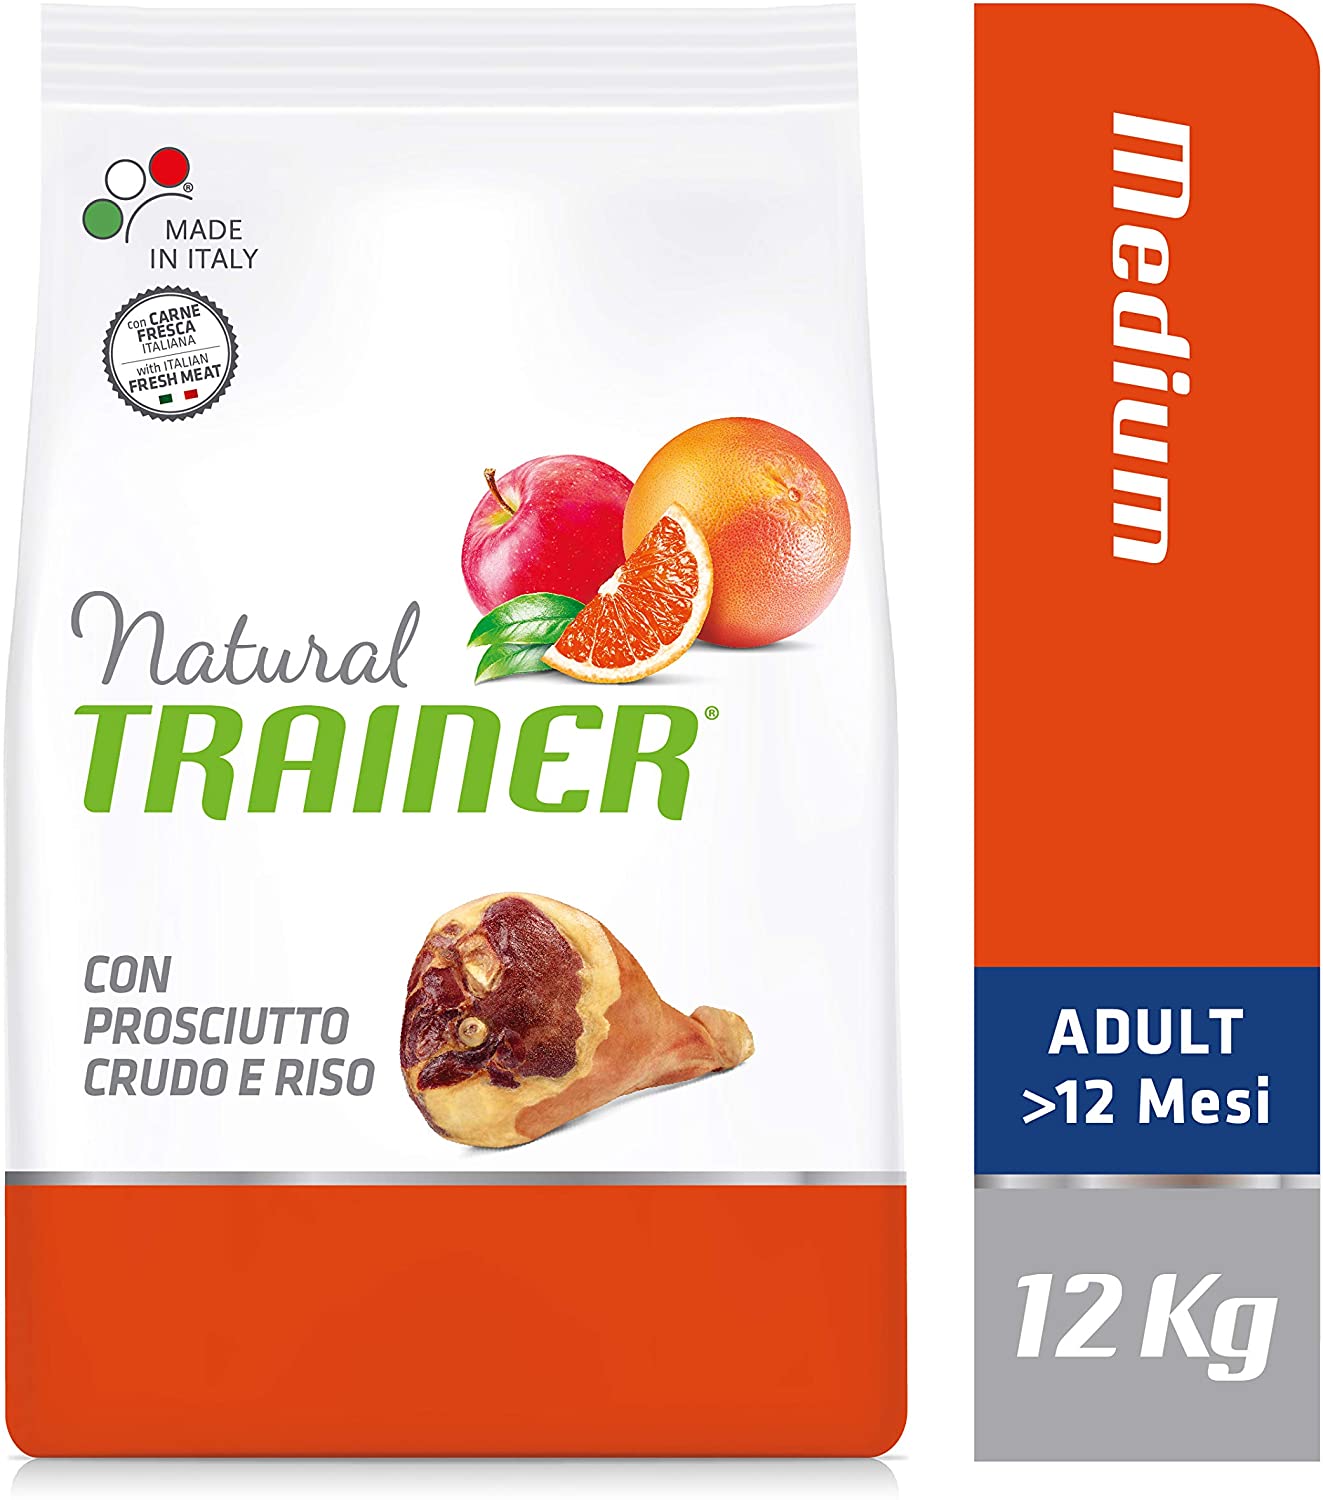  Trainer Natural TR. Adult Medio Jamón kg. 12 